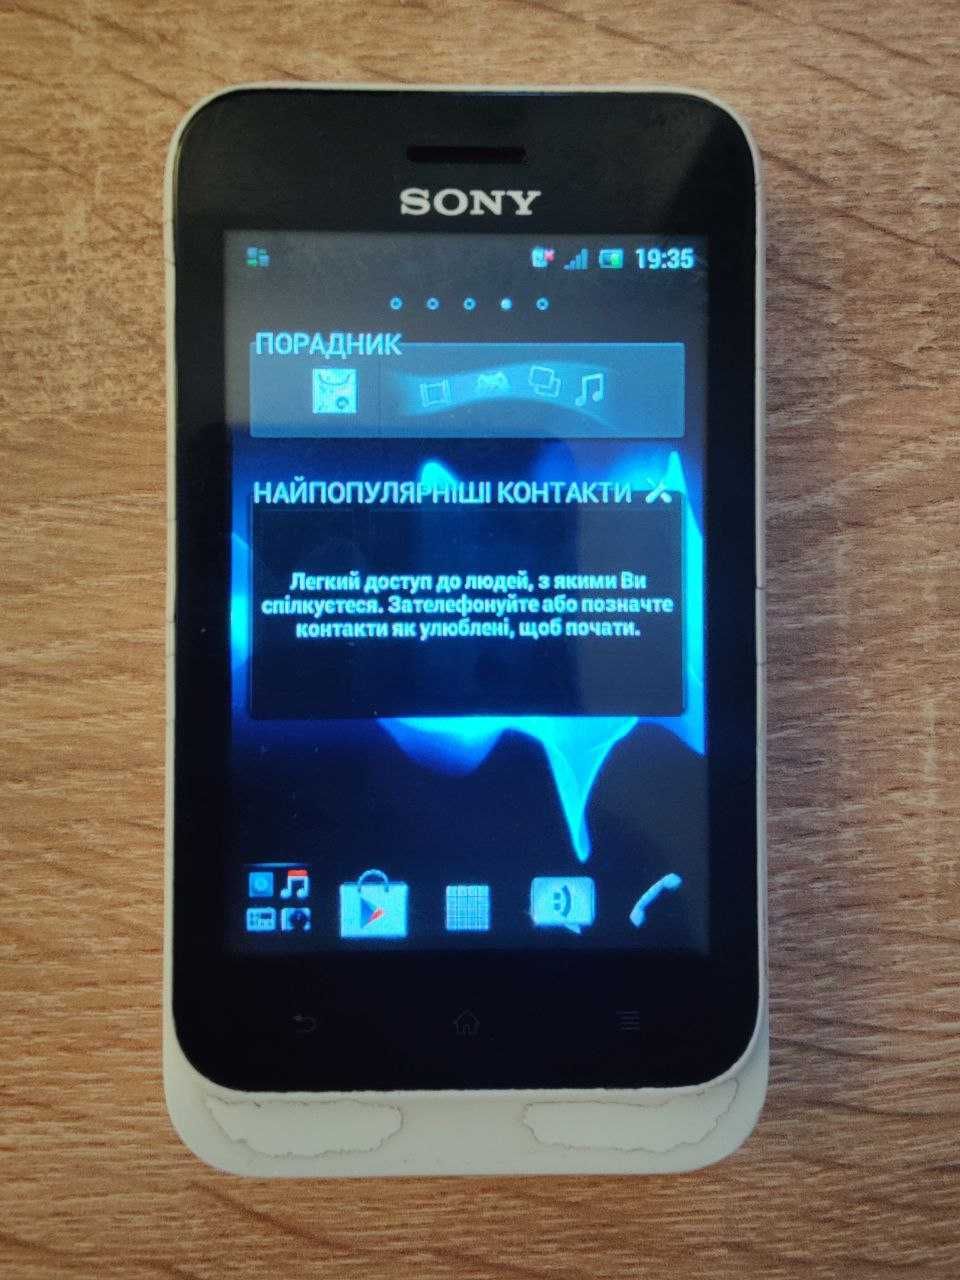 Sony Xperia tipo ST21i - не працює SIM